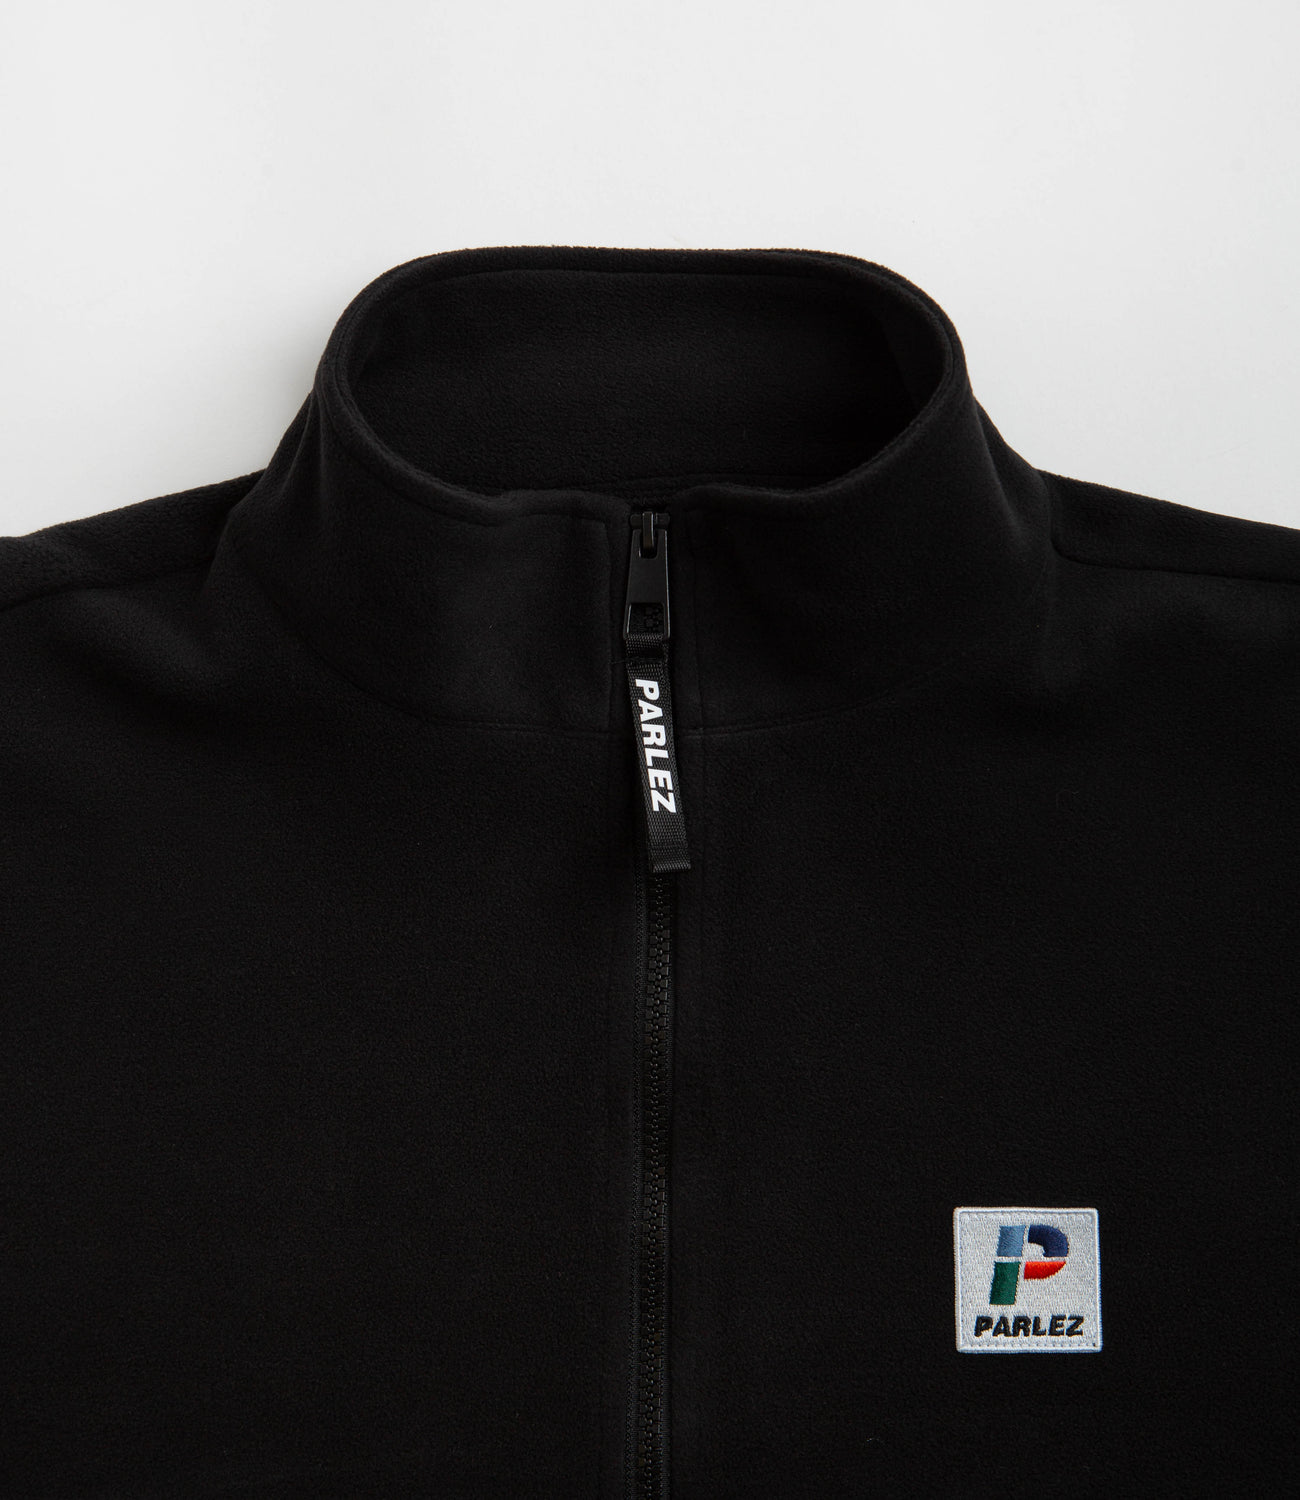 Parlez Reese Fleece 1/4 Zip Sweatshirt - Black | Flatspot